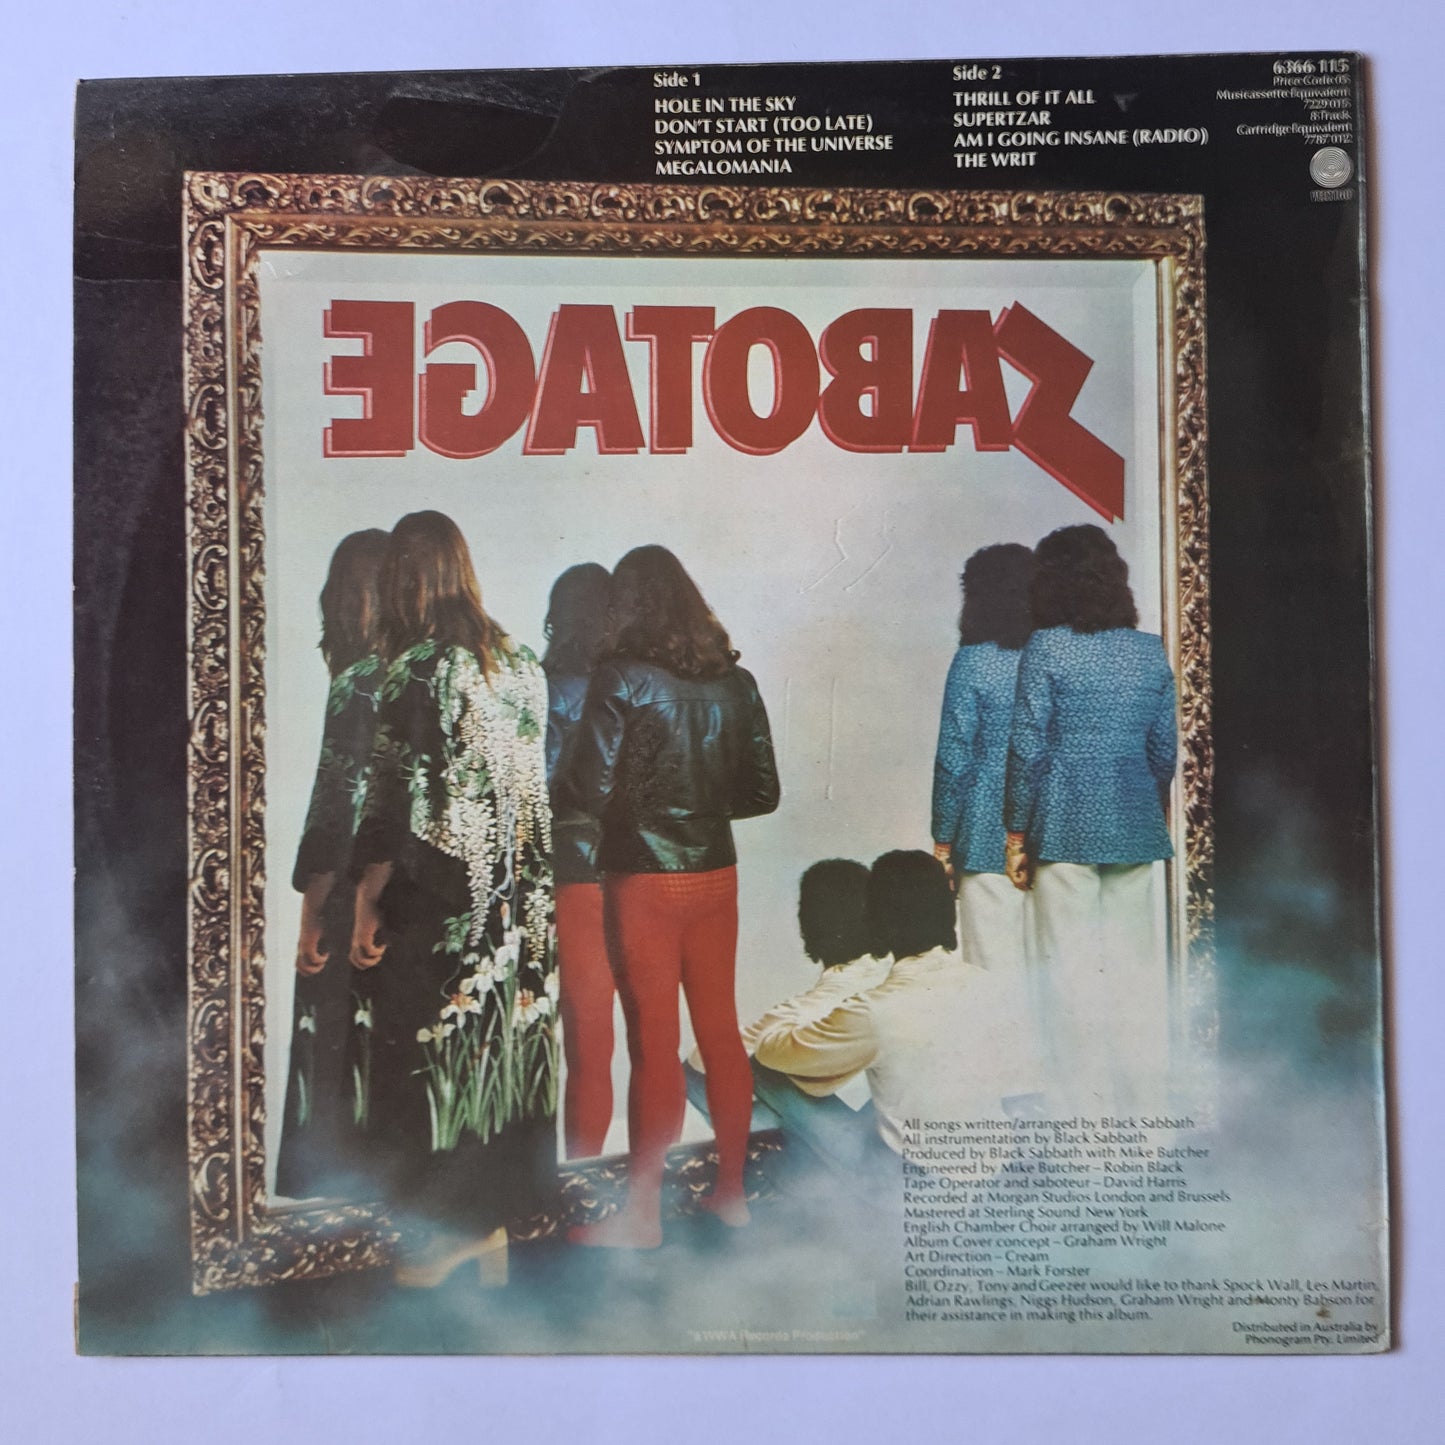 Black Sabbath – Sabotage- 1975 - Vinyl Record